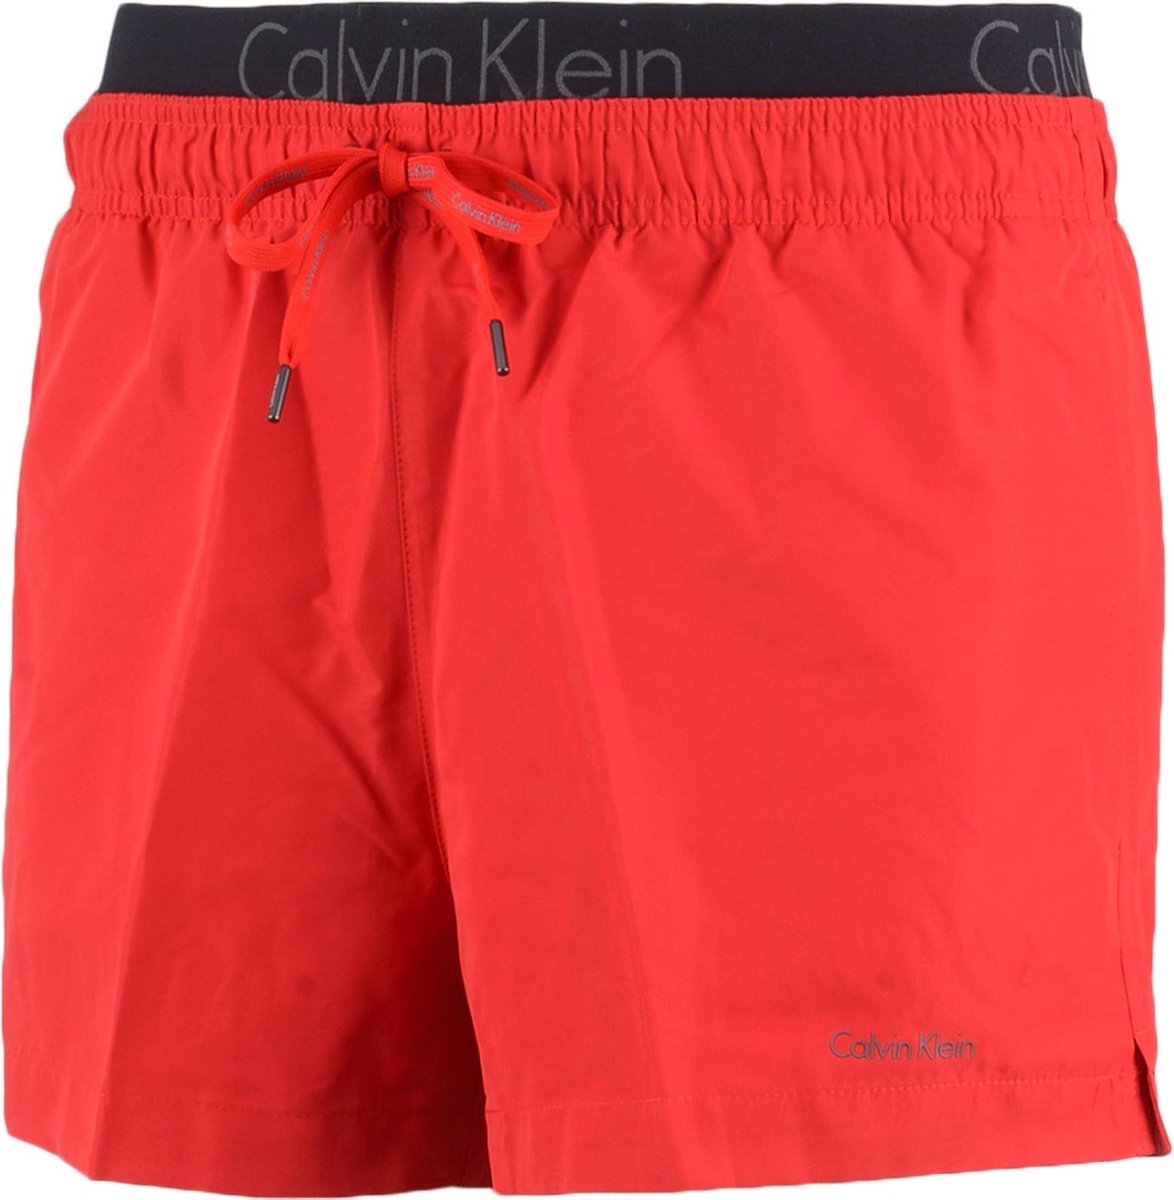 Calvin Klein Short Drawstring Waistband Zwembroek - Maat M - Mannen - rood/zwart/grijs  | bol.com